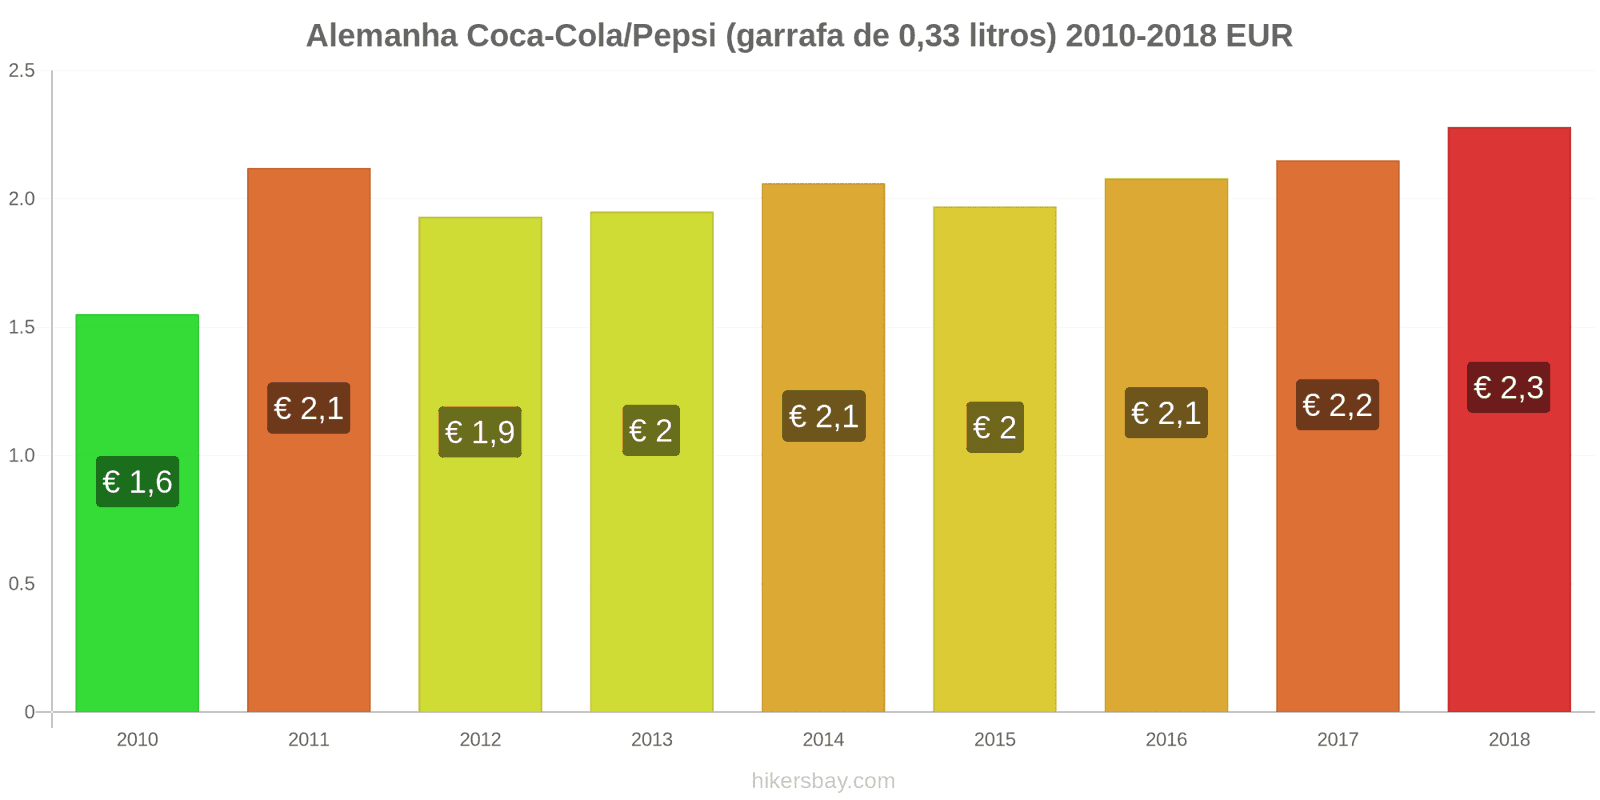 Alemanha mudanças de preços Coca-Cola/Pepsi (garrafa de 0.33 litros) hikersbay.com